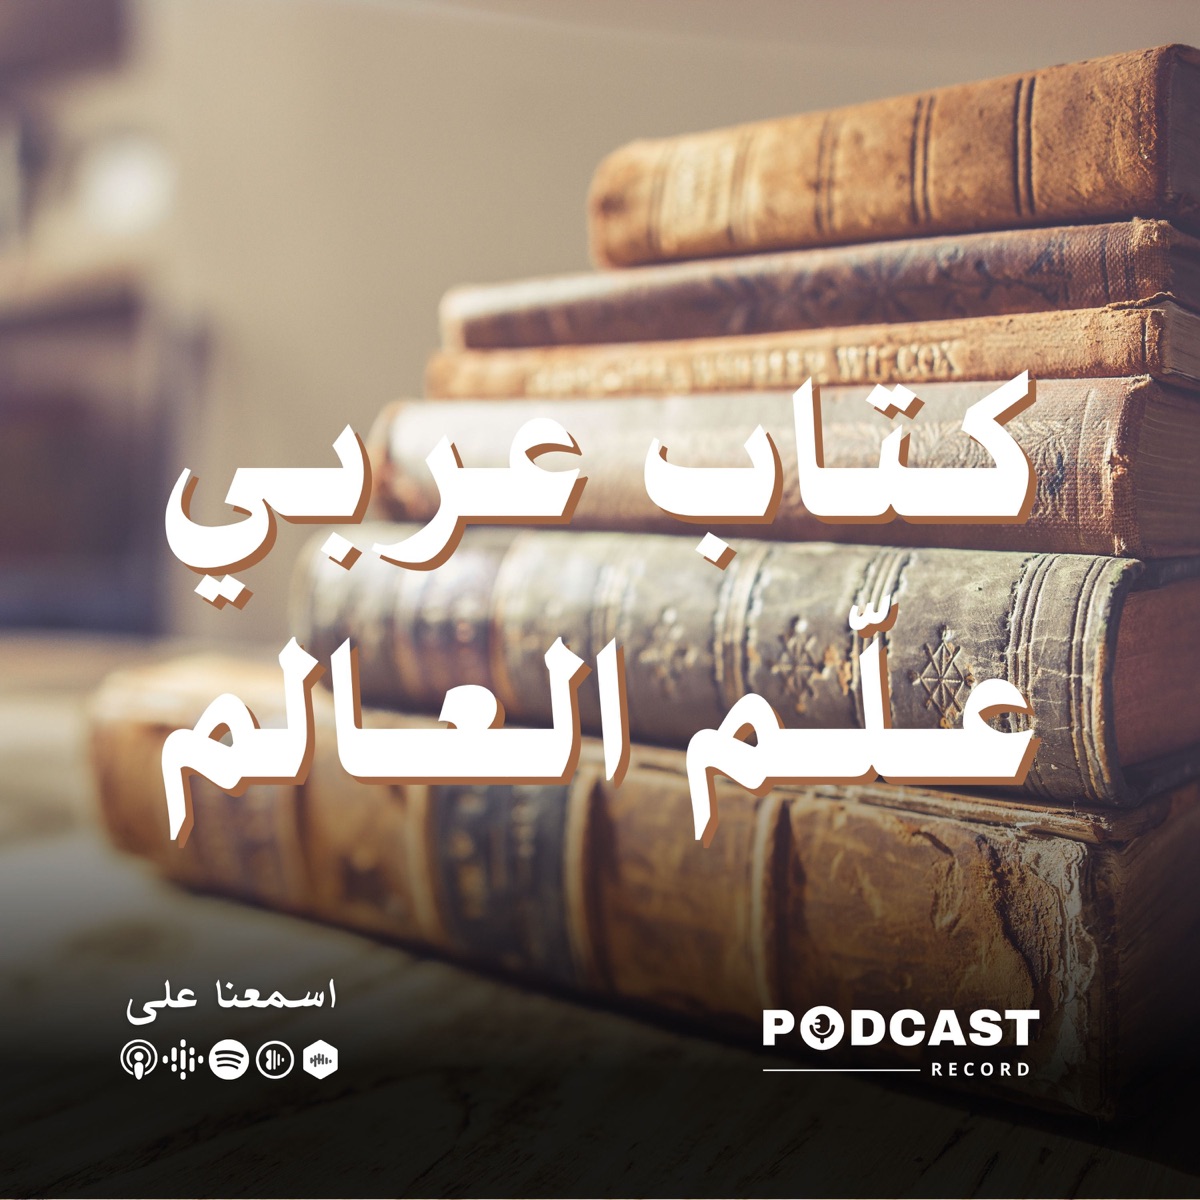 كتاب عربي علّم العالم – Podcast – Podtail